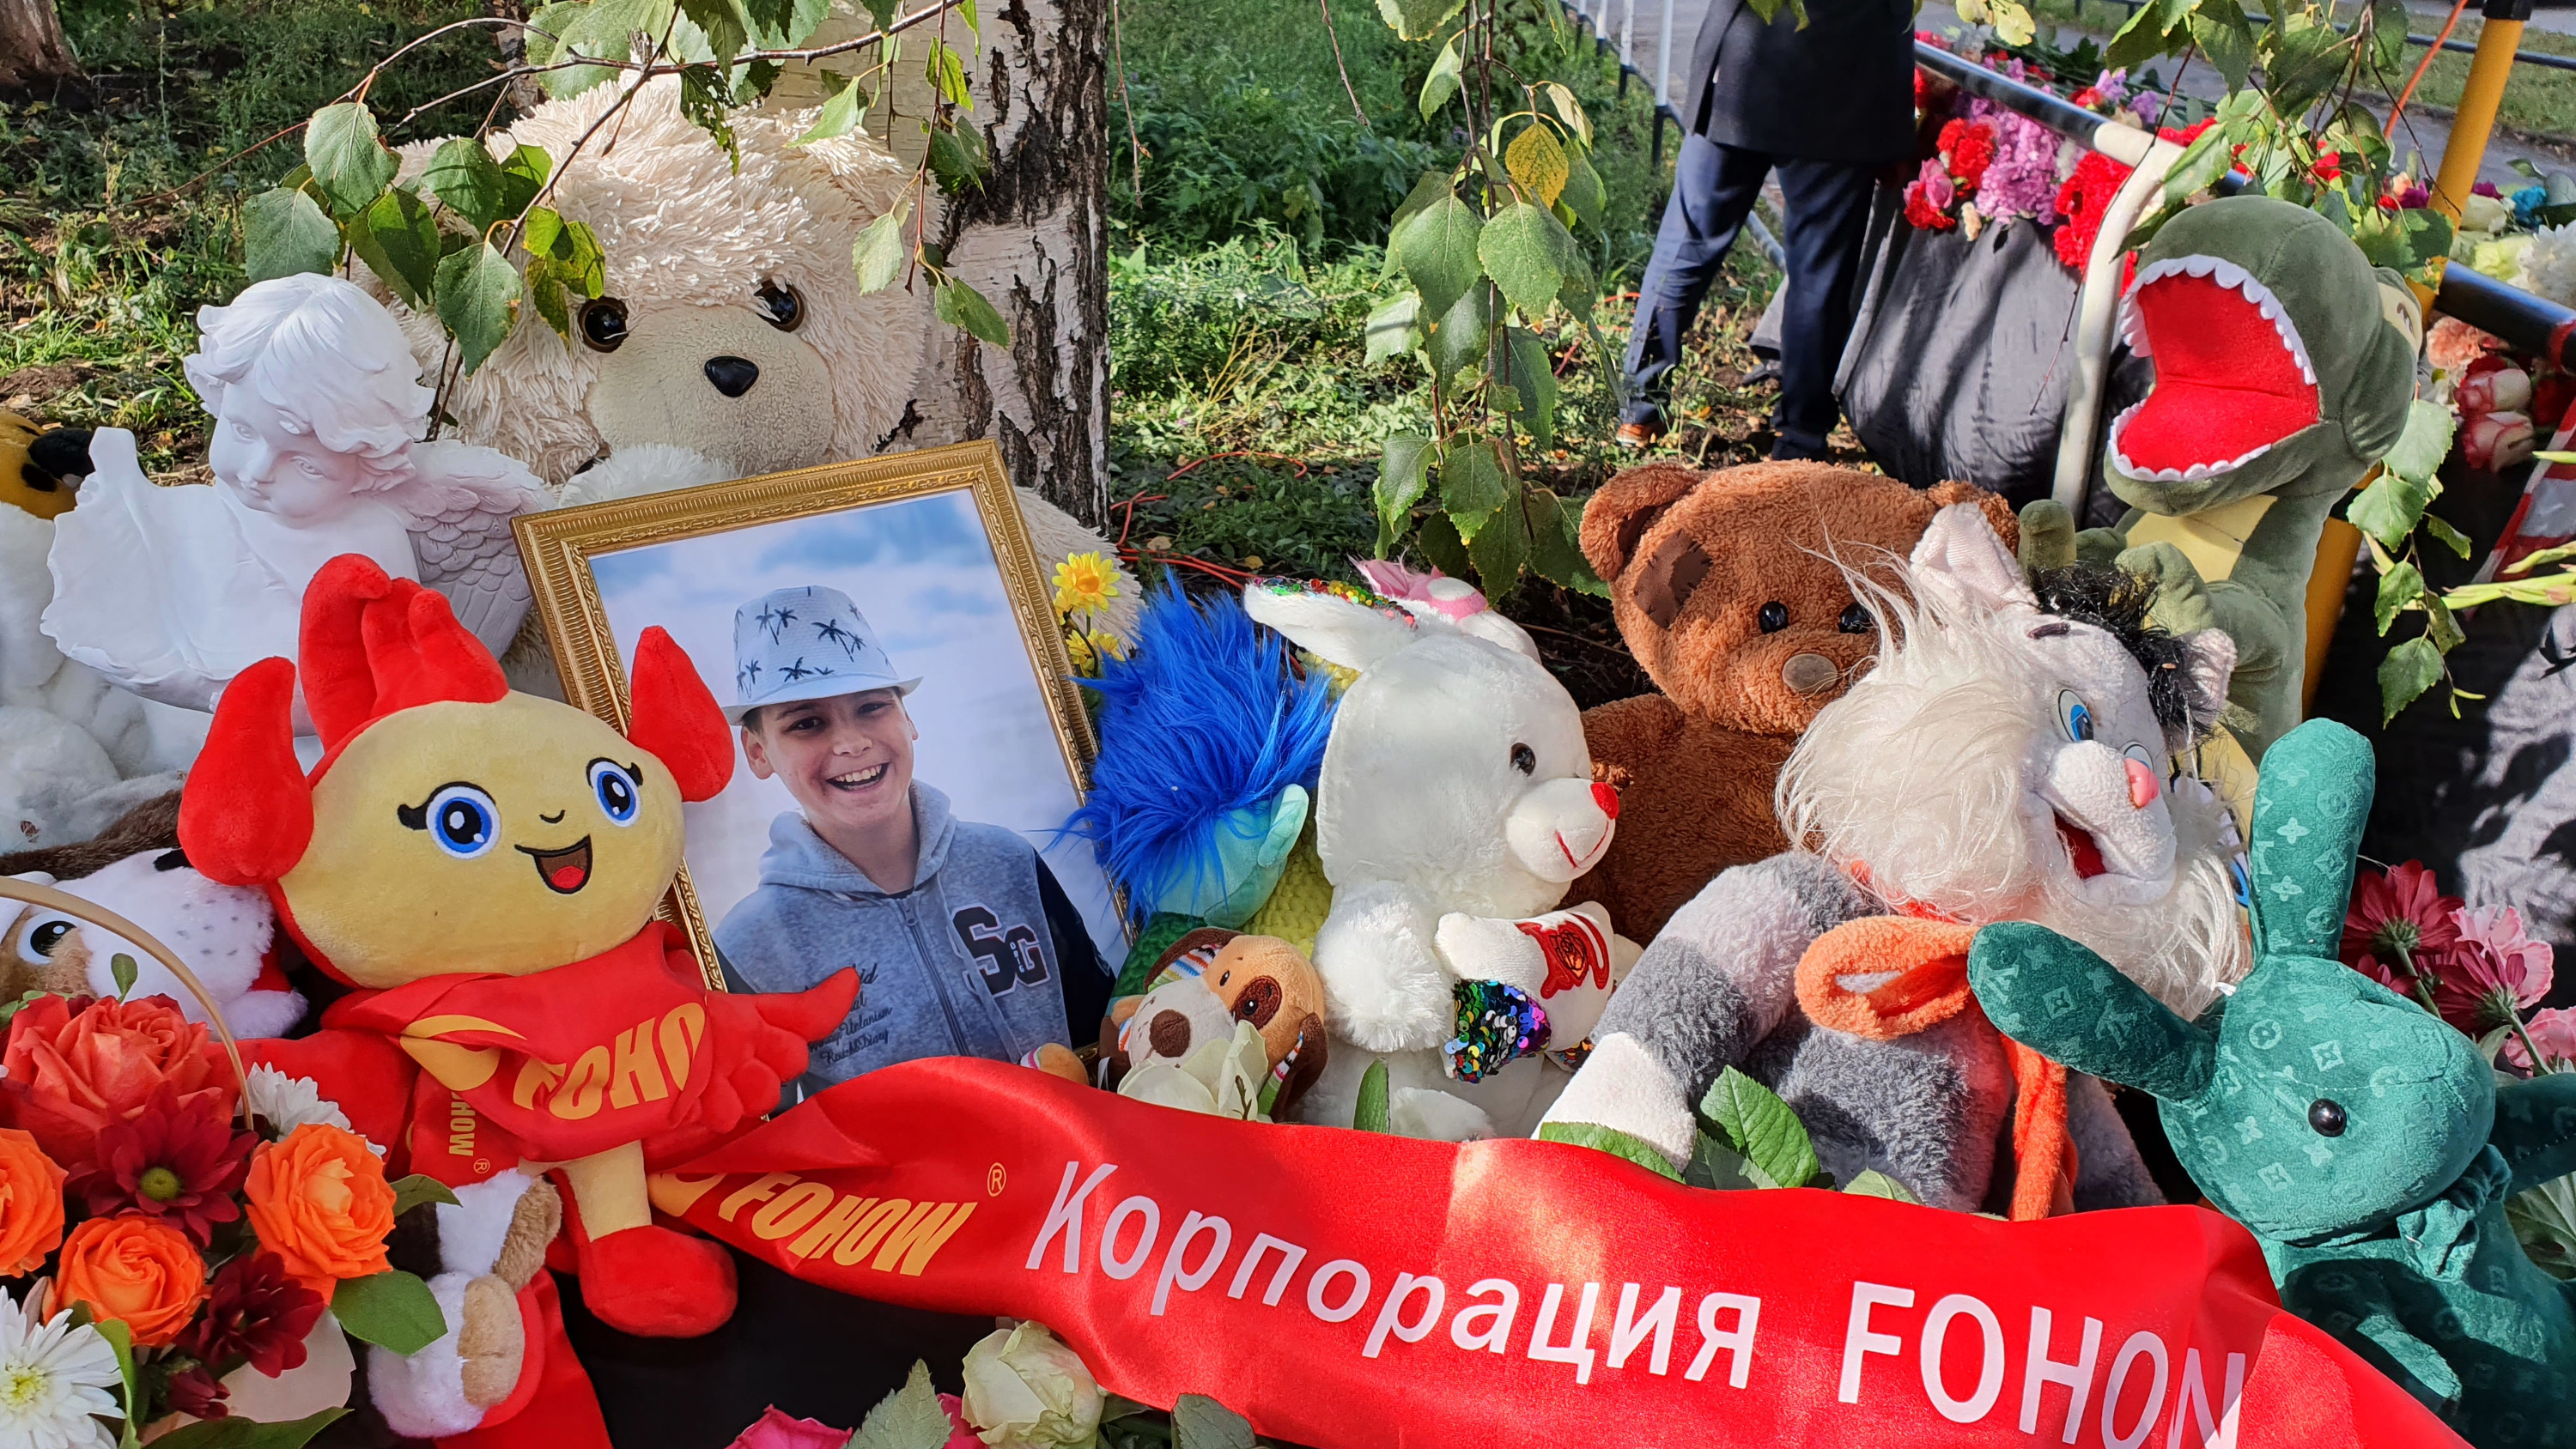 Погибли 11 детей и 6 взрослых. Всё о трагедии в Ижевске, где мужчина устроил стрельбу в школе